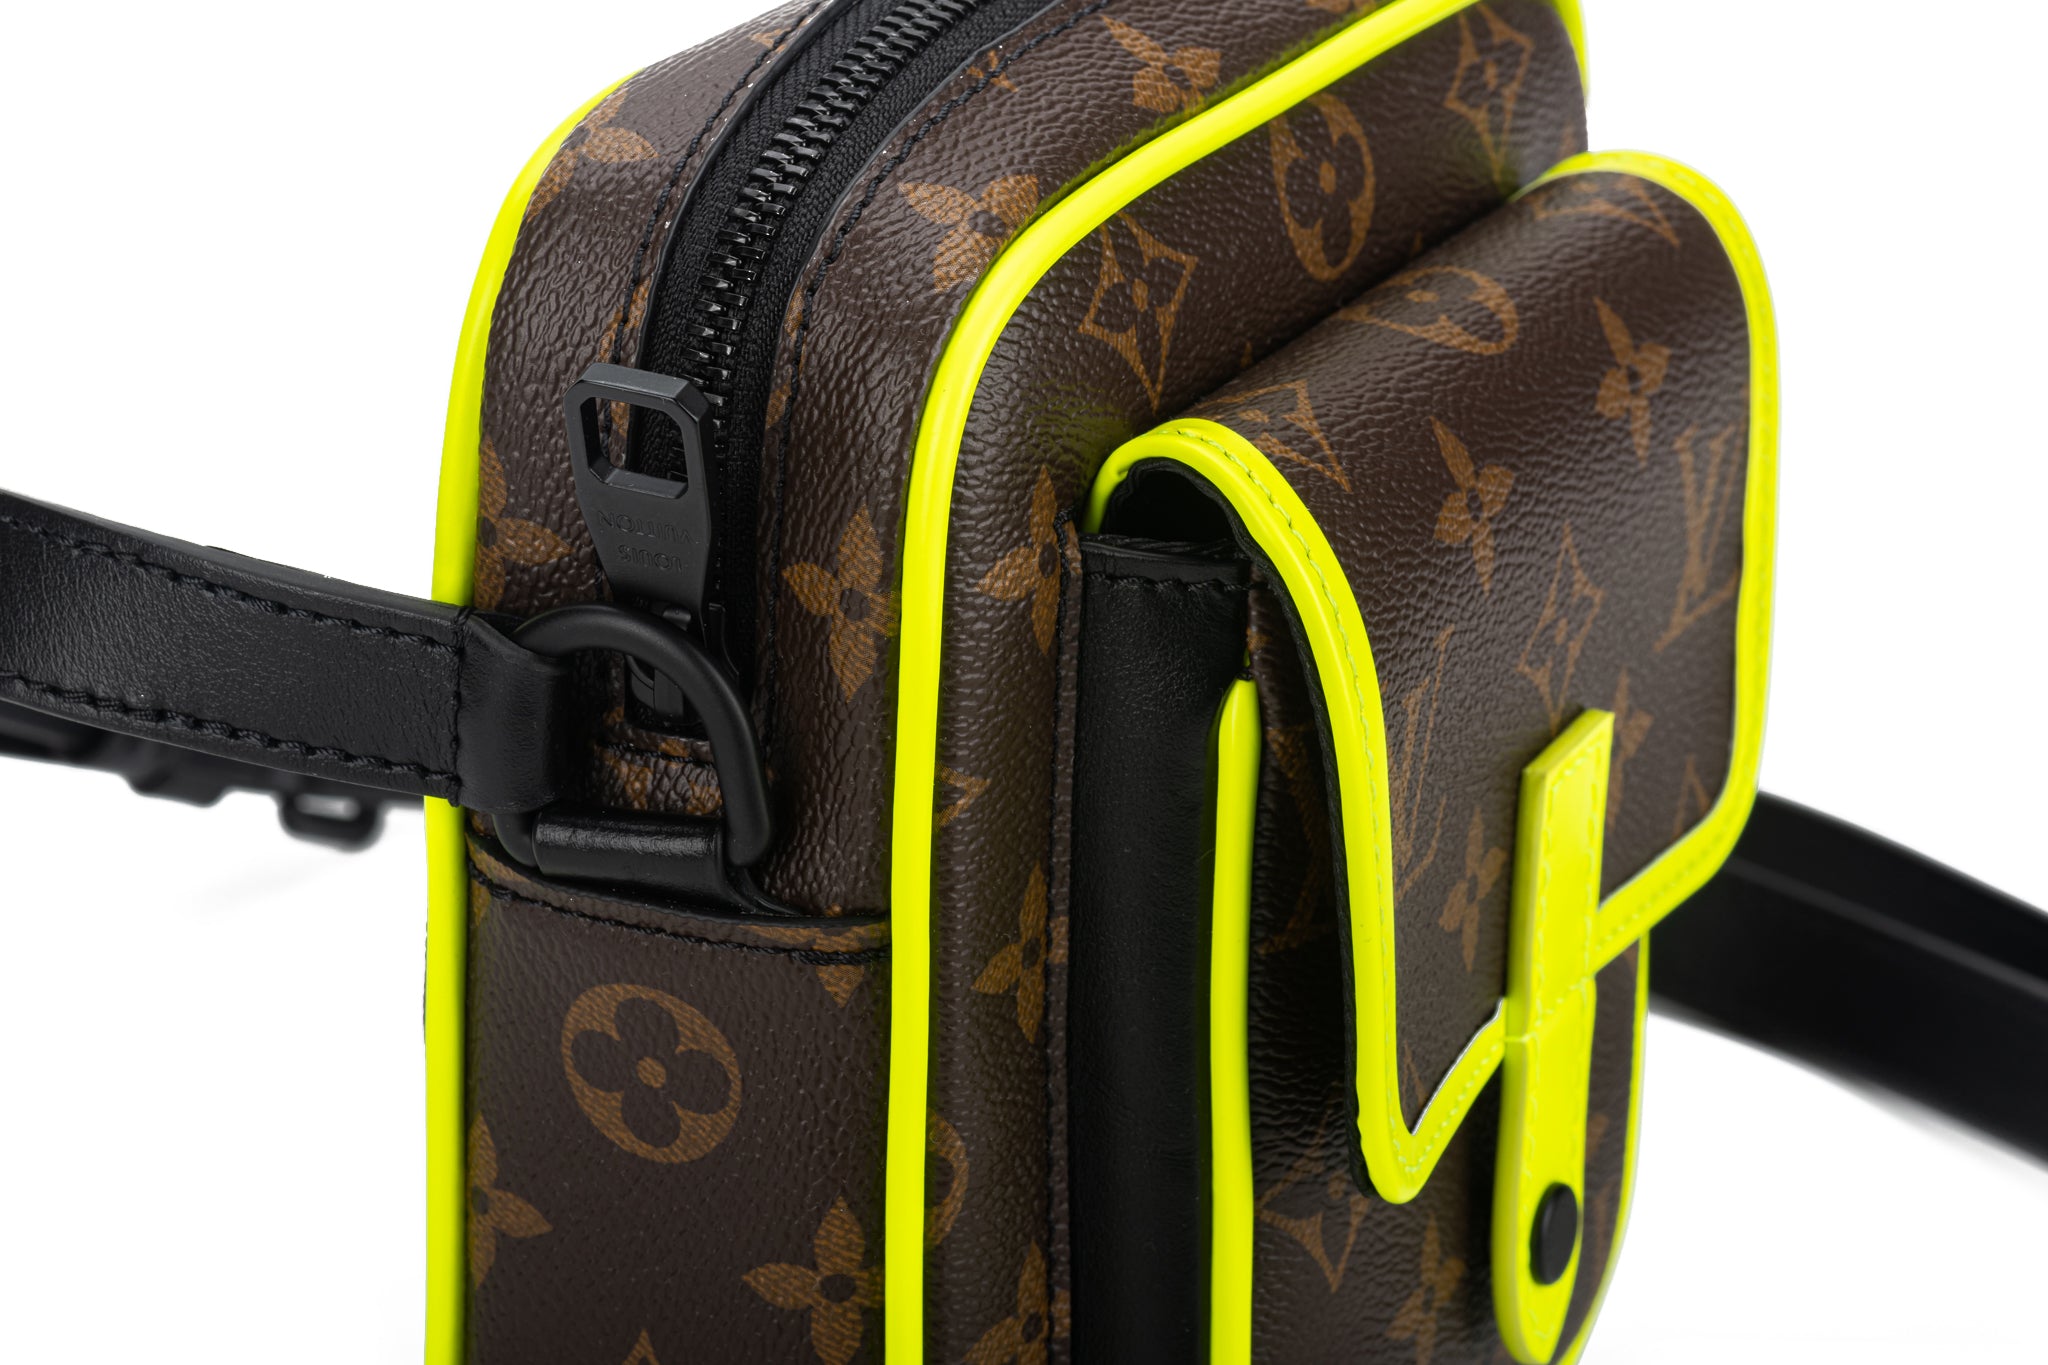 Louis Vuitton Monogram Macassar Christopher Wearable Wallet - Messenger  Bags, Bags